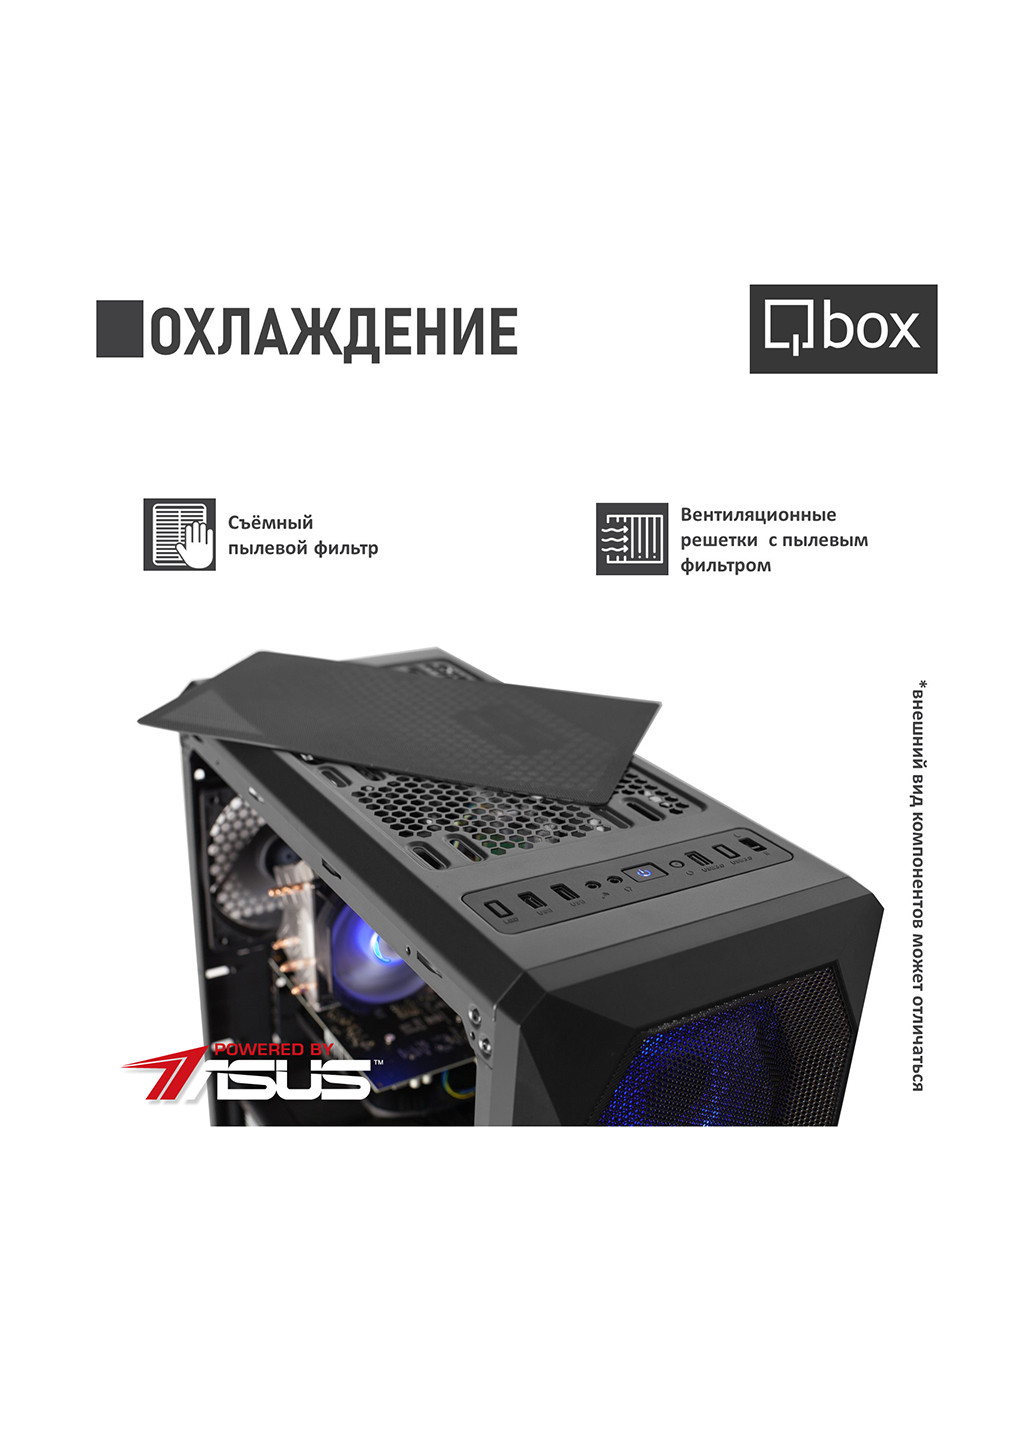 Компьютер I3671 Qbox qbox i3671 (131396742)